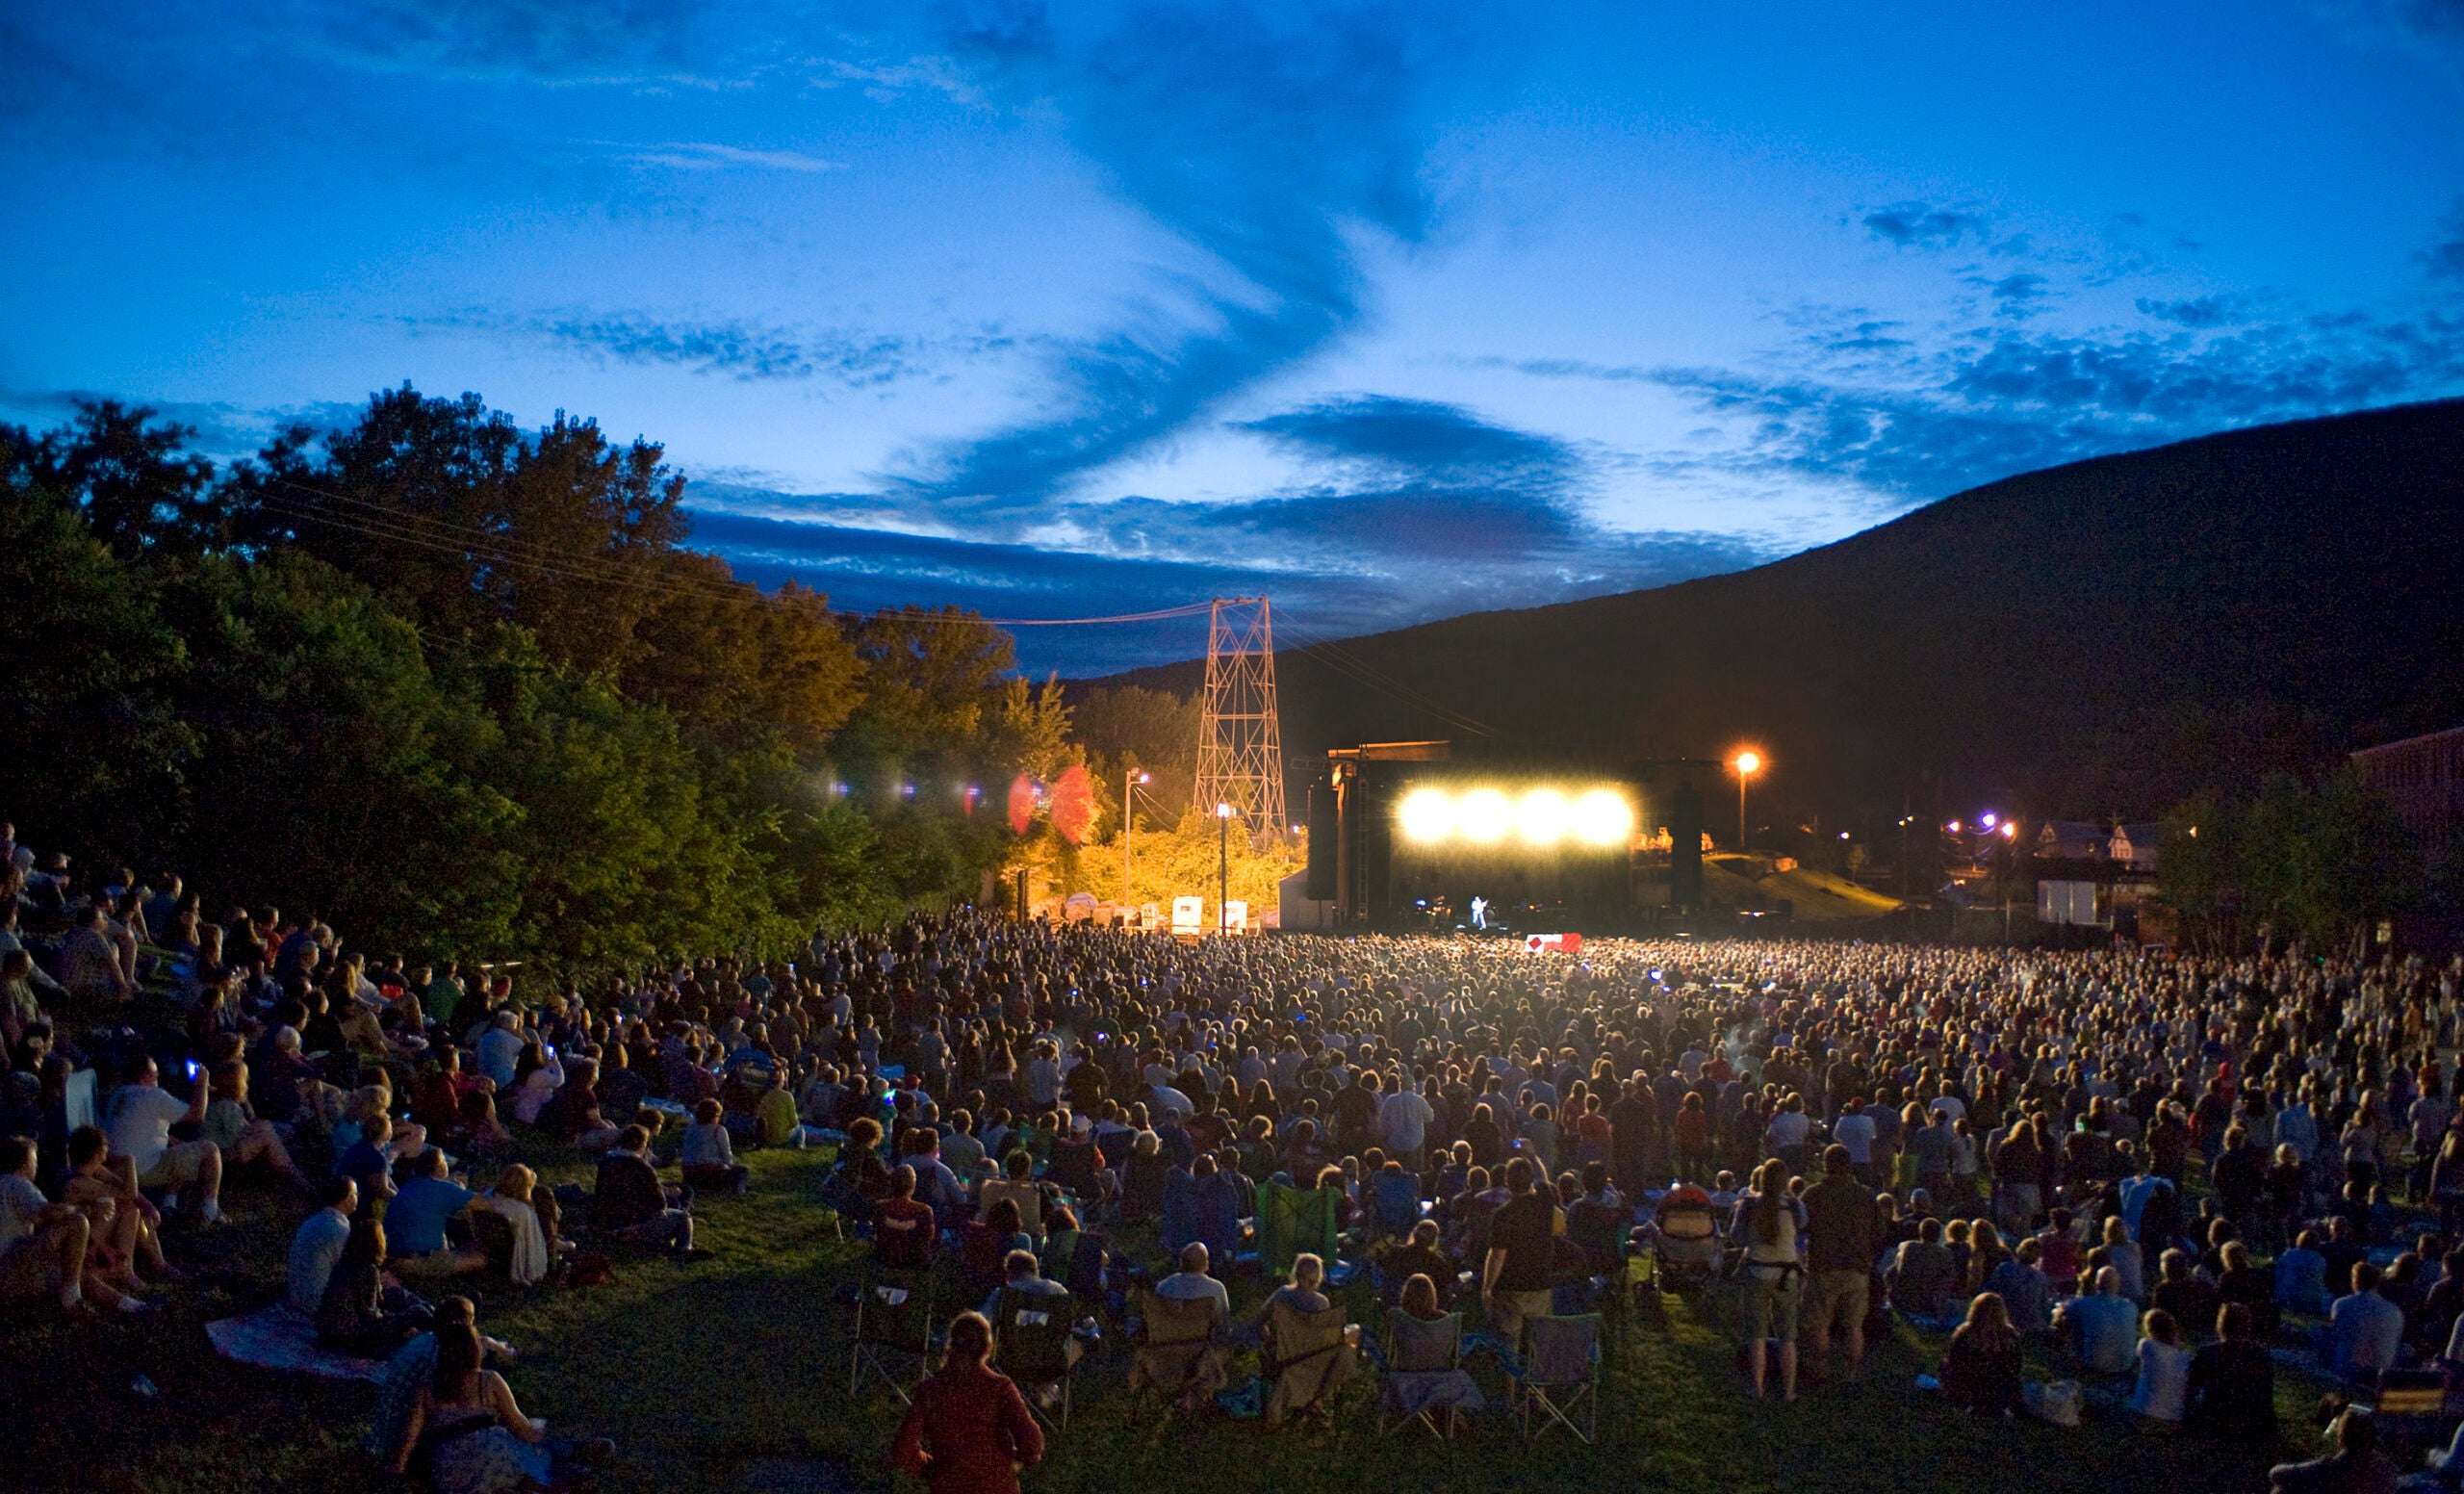 Wilco's festival returns to Mass MoCA for a third time